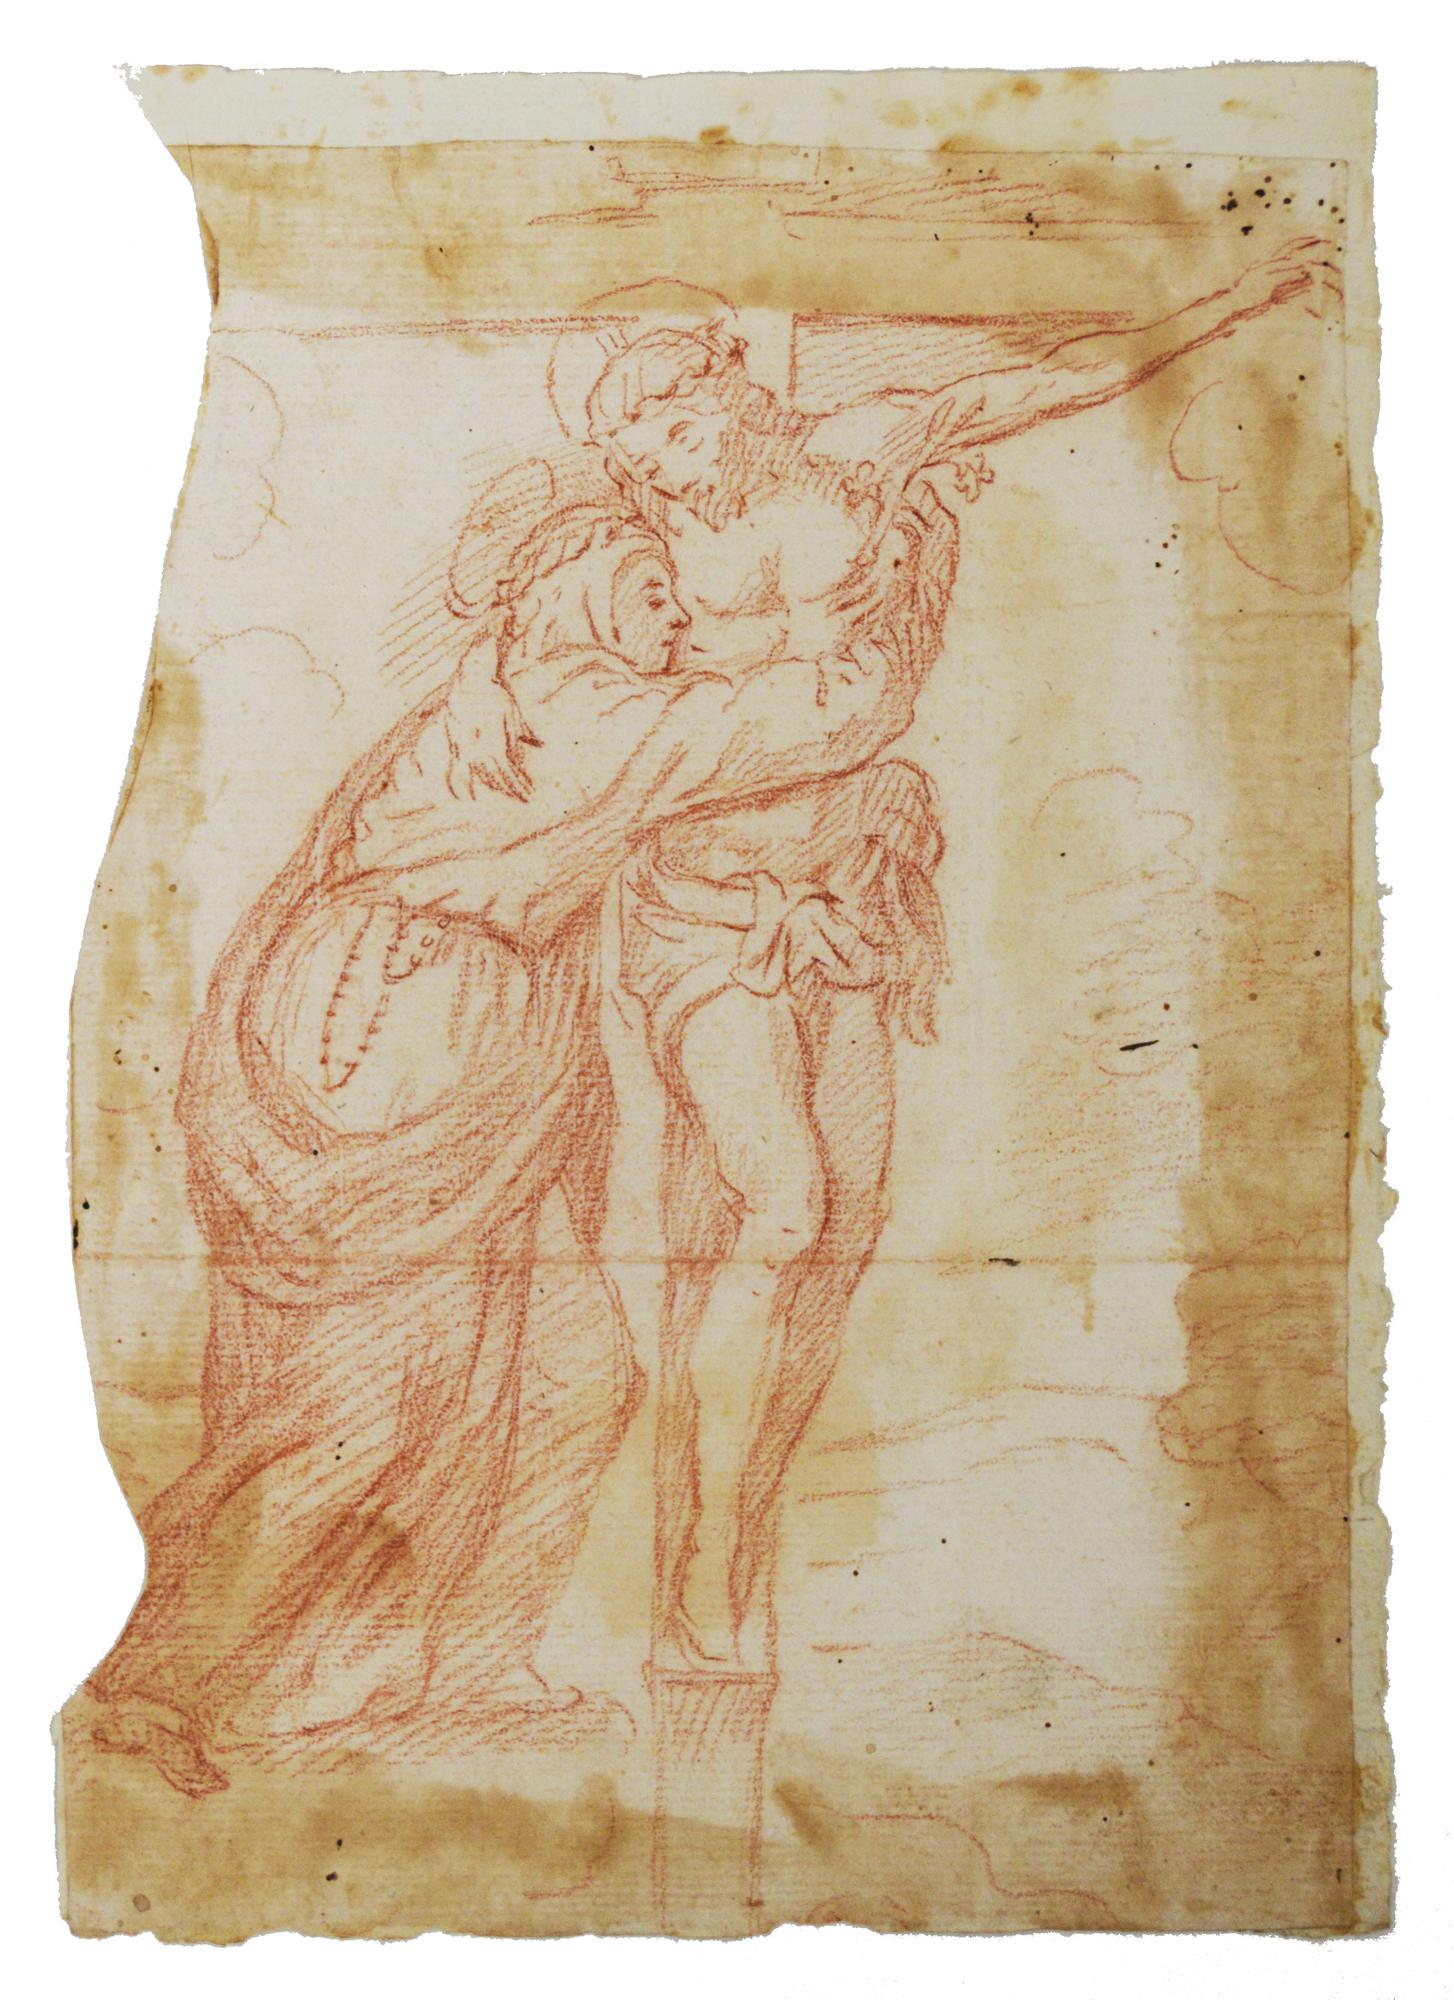 Ambito di Pier Dandini CROCIFISSIONE sanguigna su carta, cm 21,5x15,5